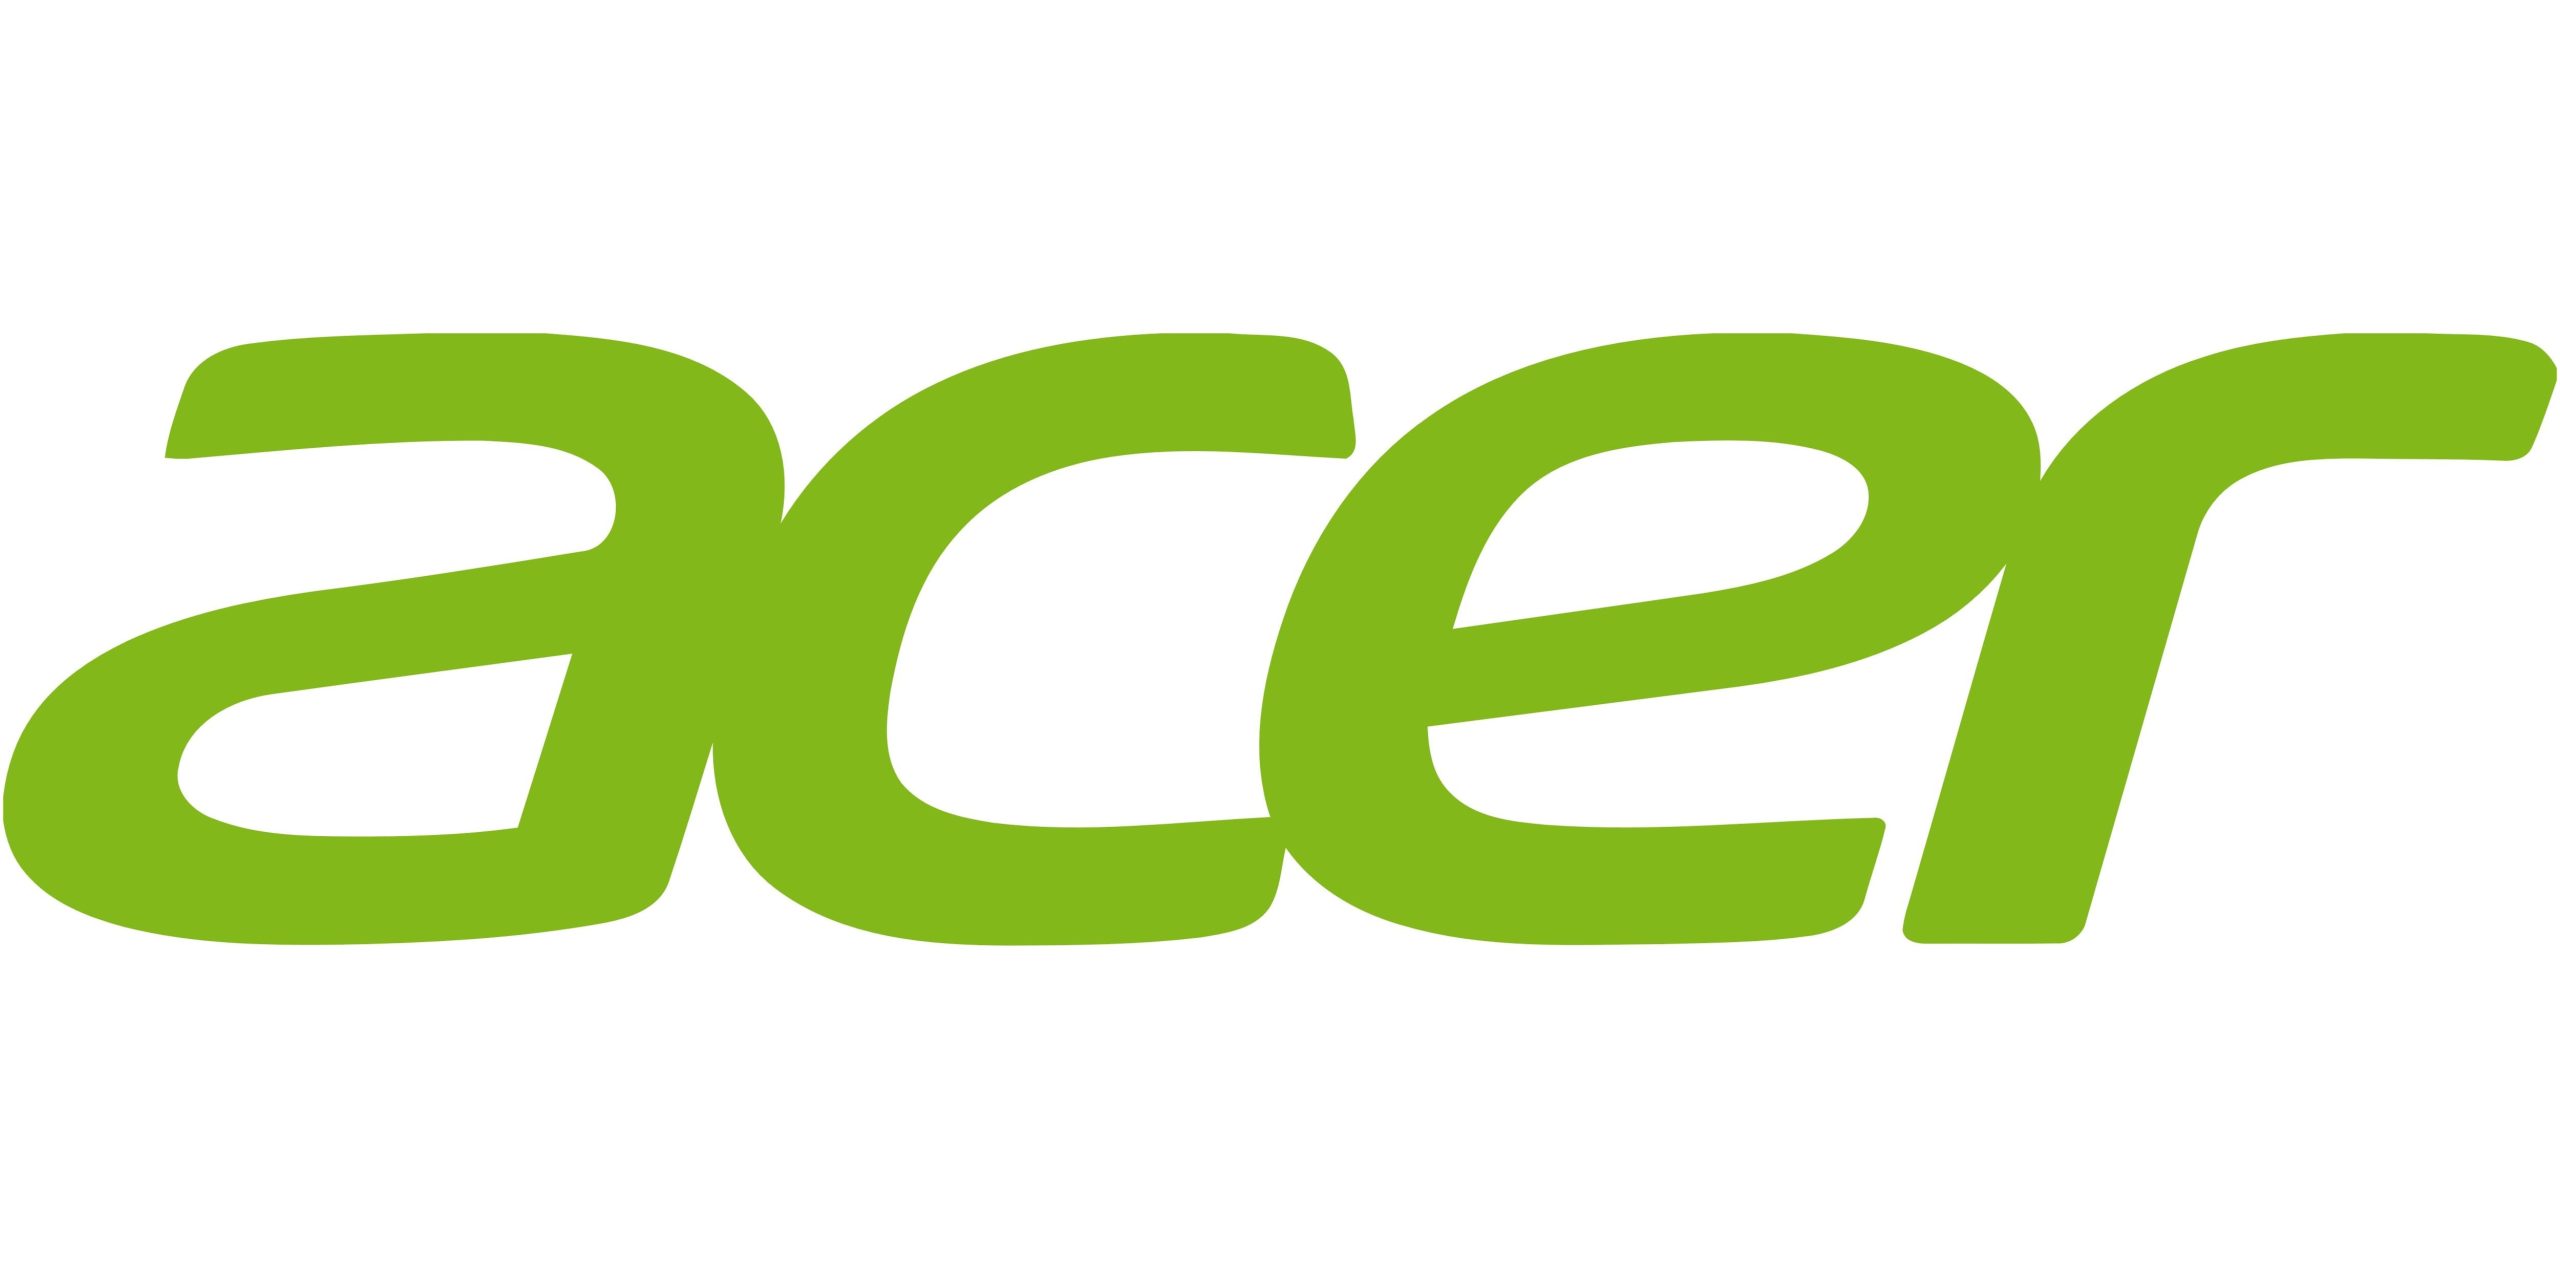 Acer-logo-scaled